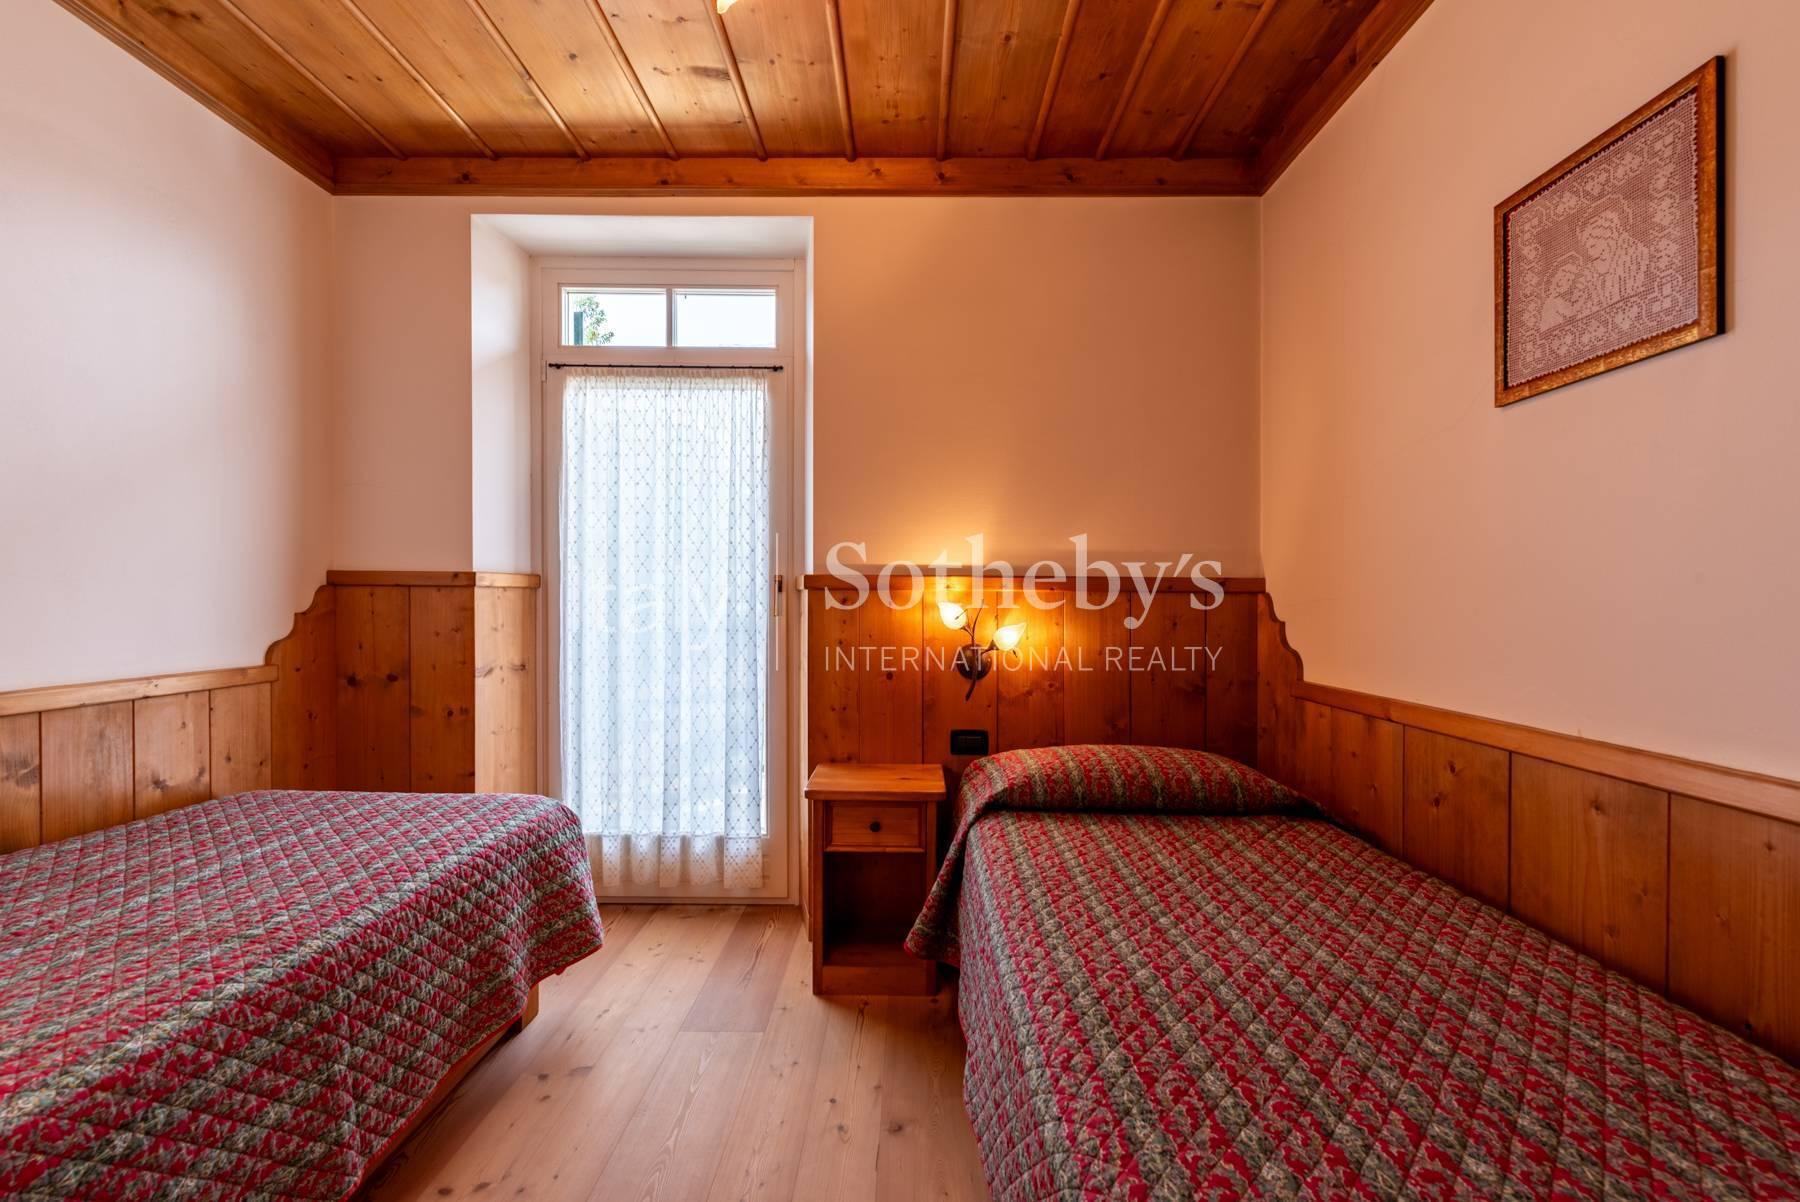 Raffinierte Wohnung auf zwei Ebenen in Cortina d'Ampezzo - 16